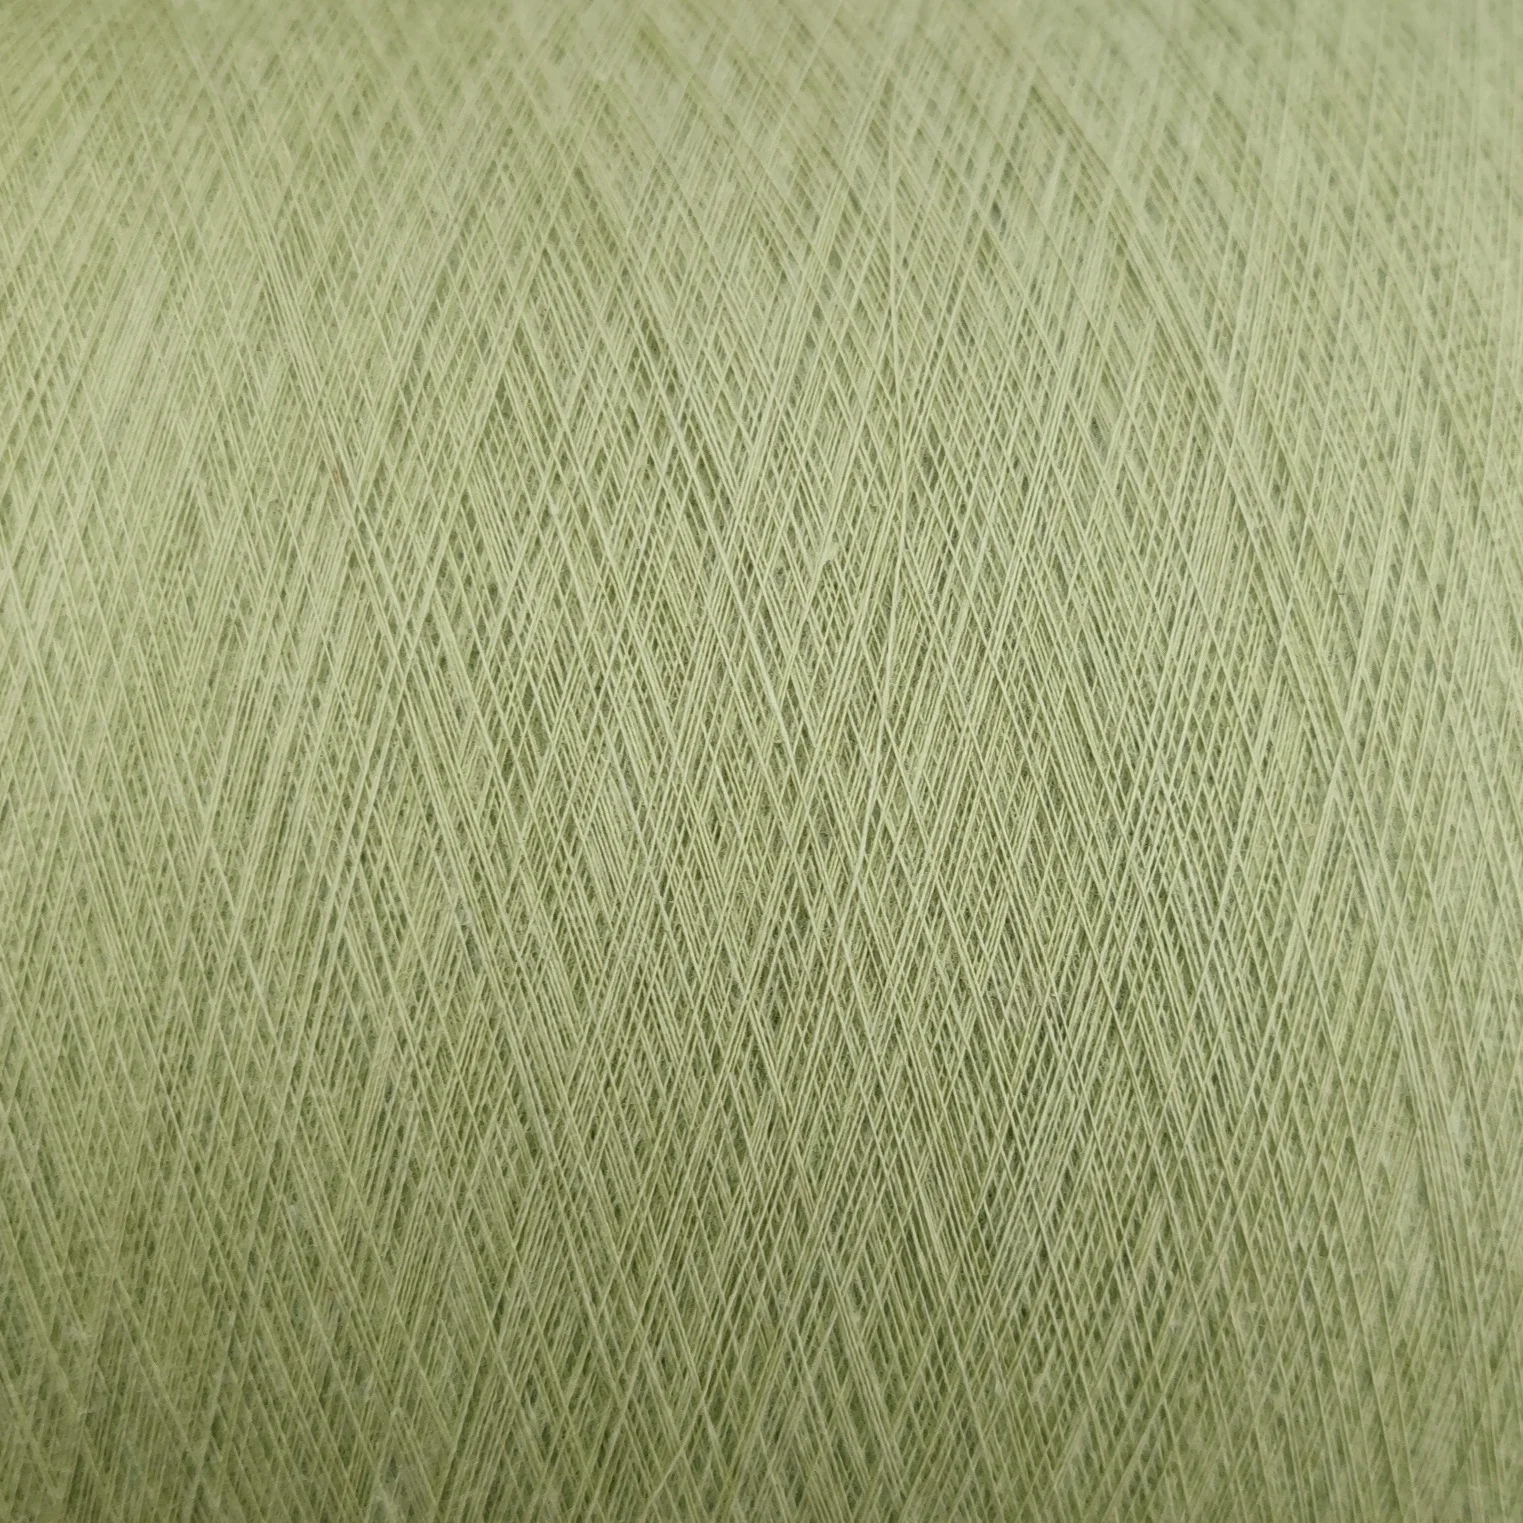 Высококачественная чесаная Органическая хлопчатобумажная пряжа для вязания и плетения с сертификацией